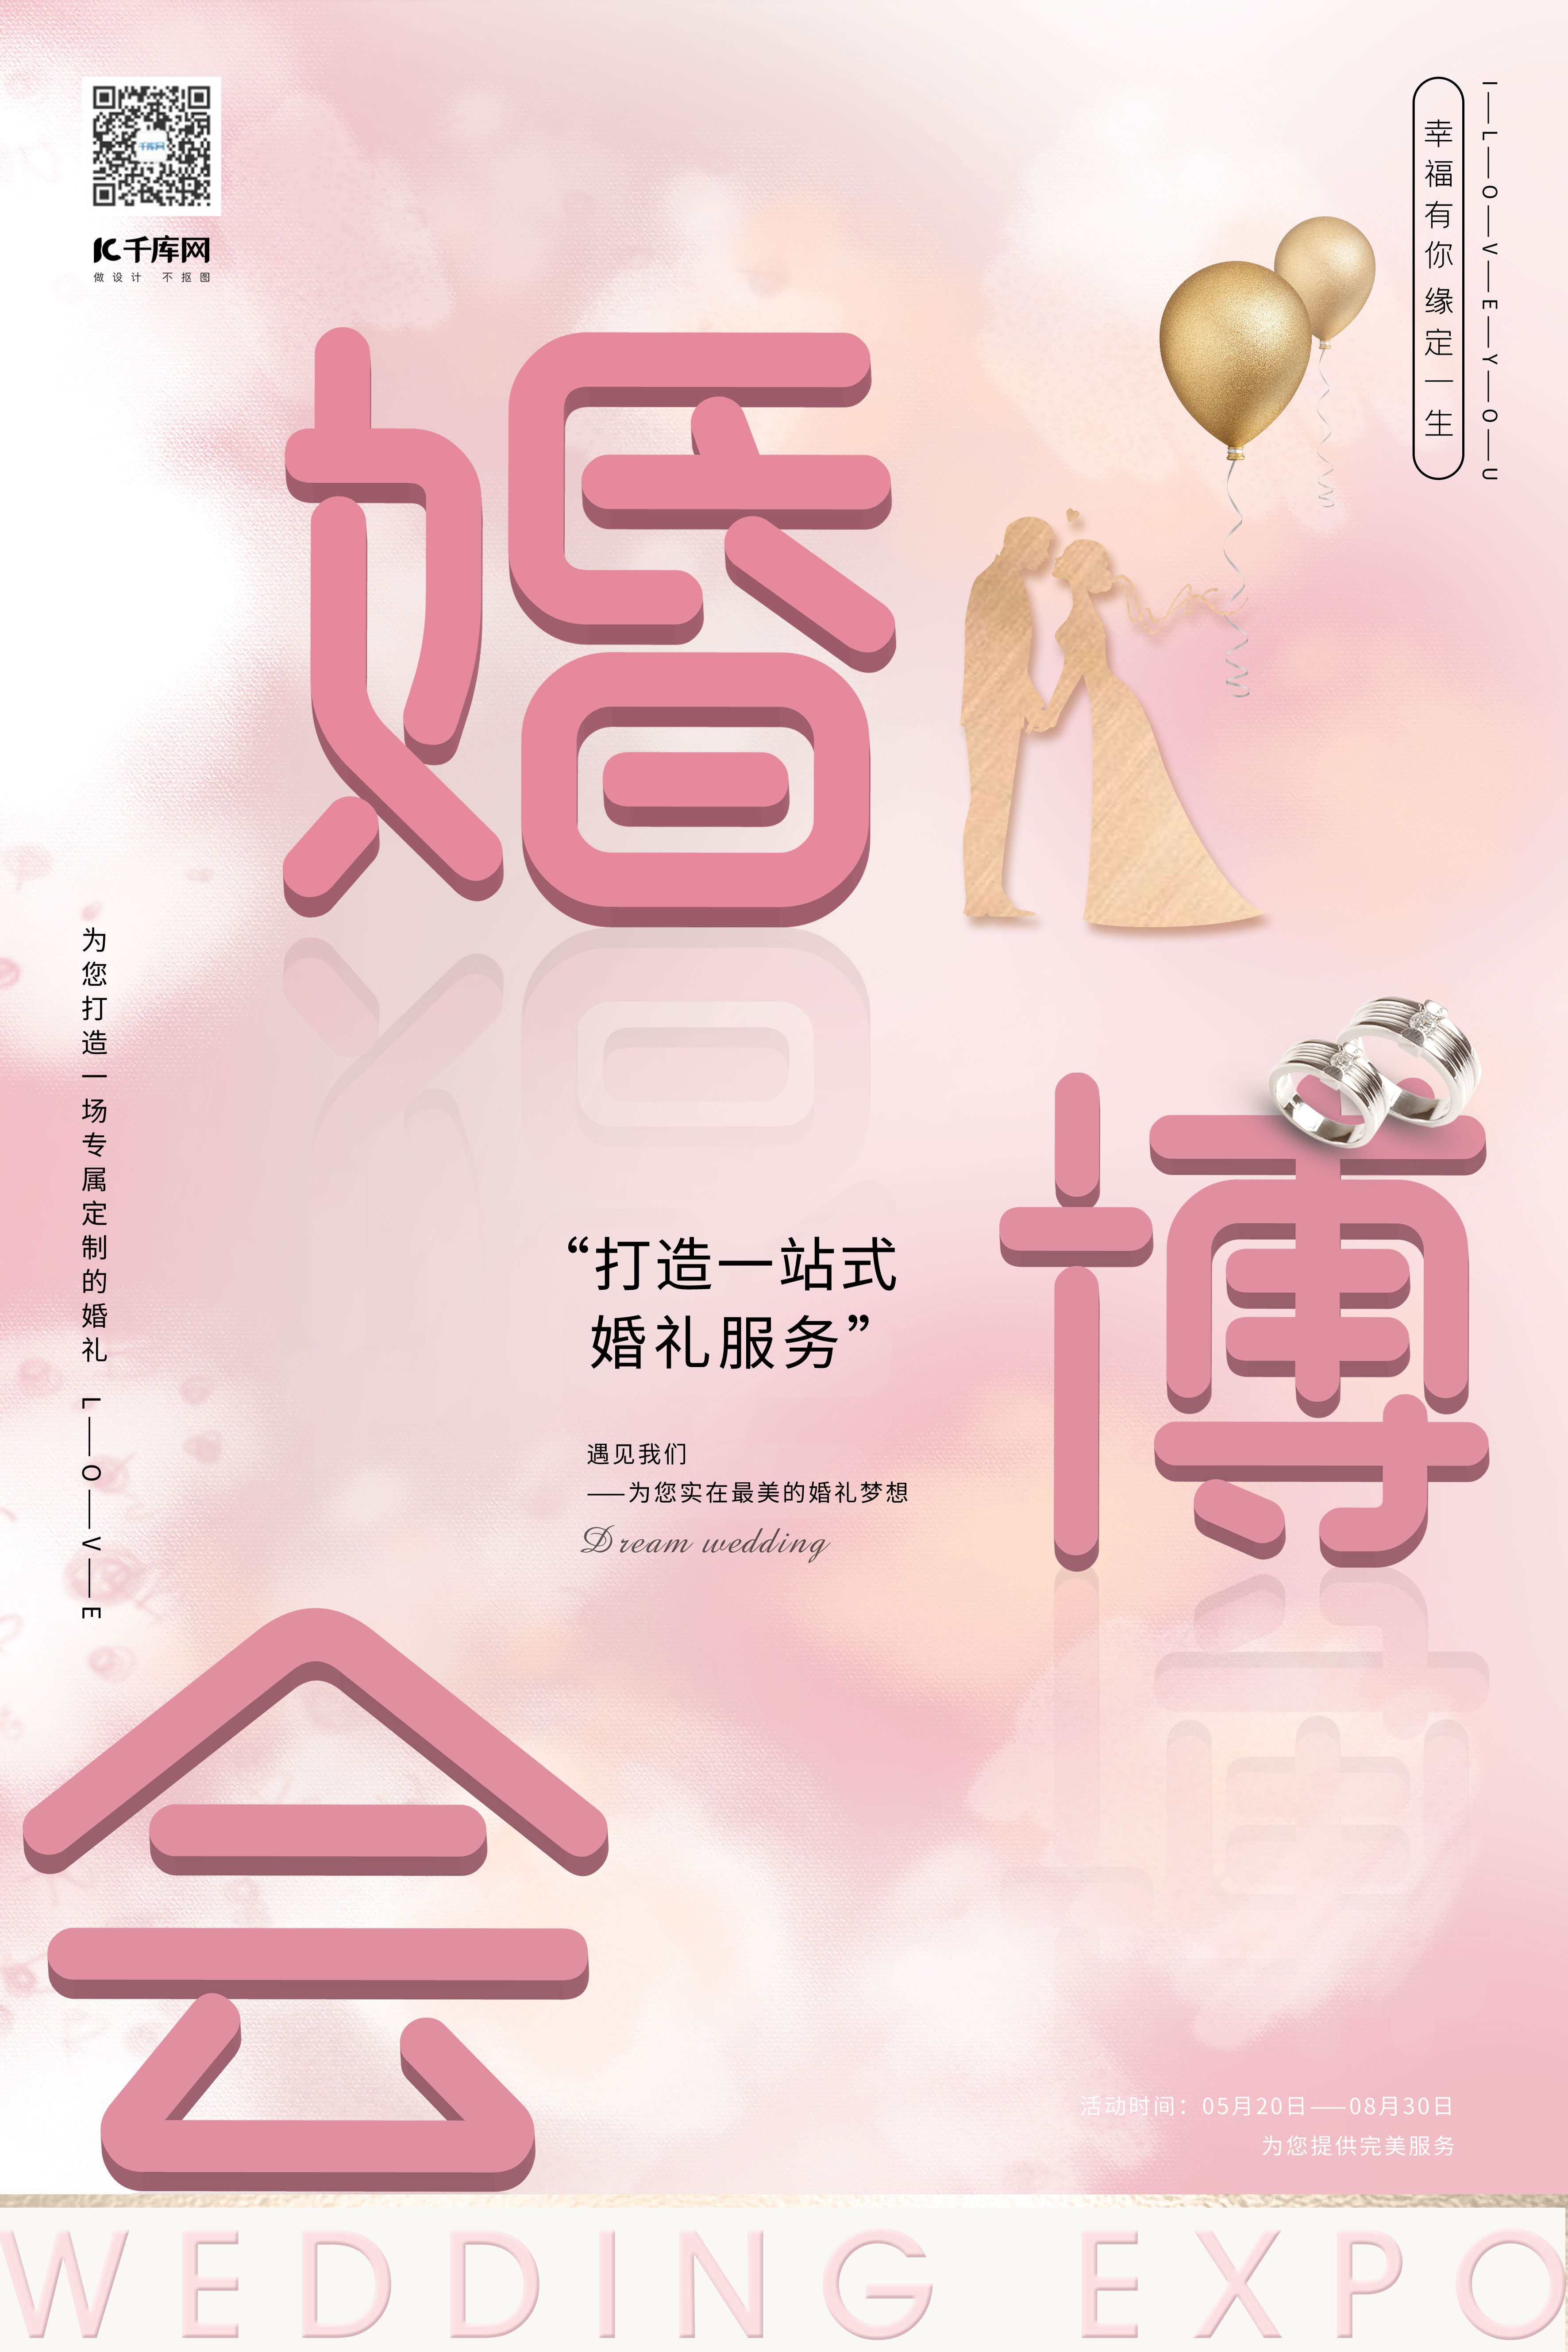 婚博会3d婚博会字体淡粉色时尚梦幻海报图片